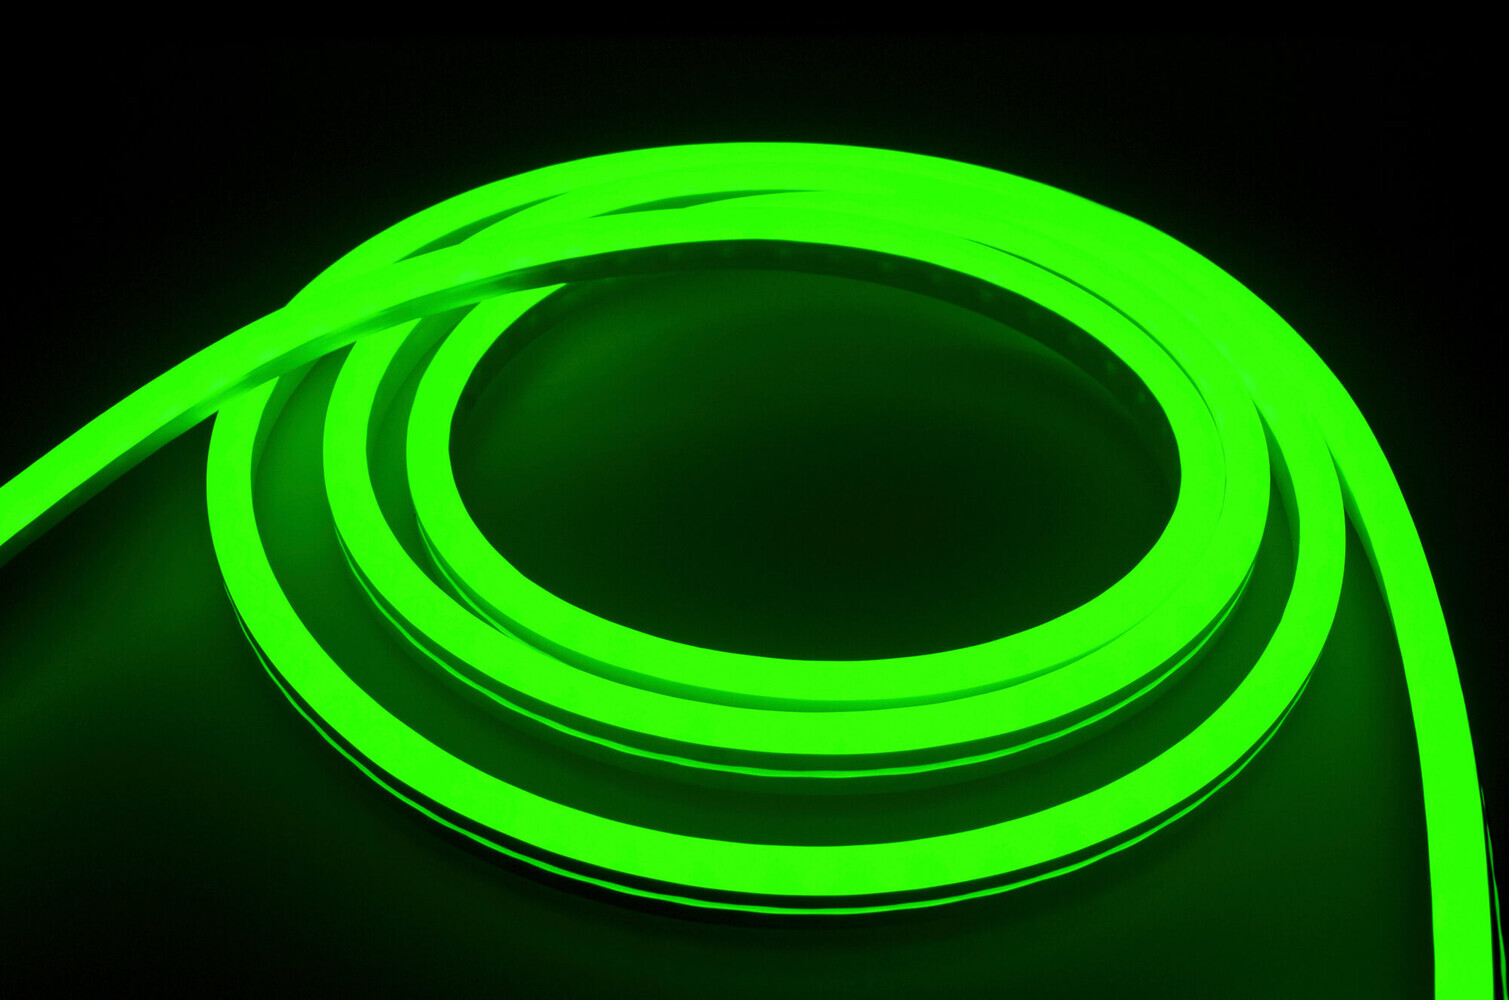 Hochwertiger, farbenfroher LED Streifen von LED Universum, ideal für professionelle Installationen